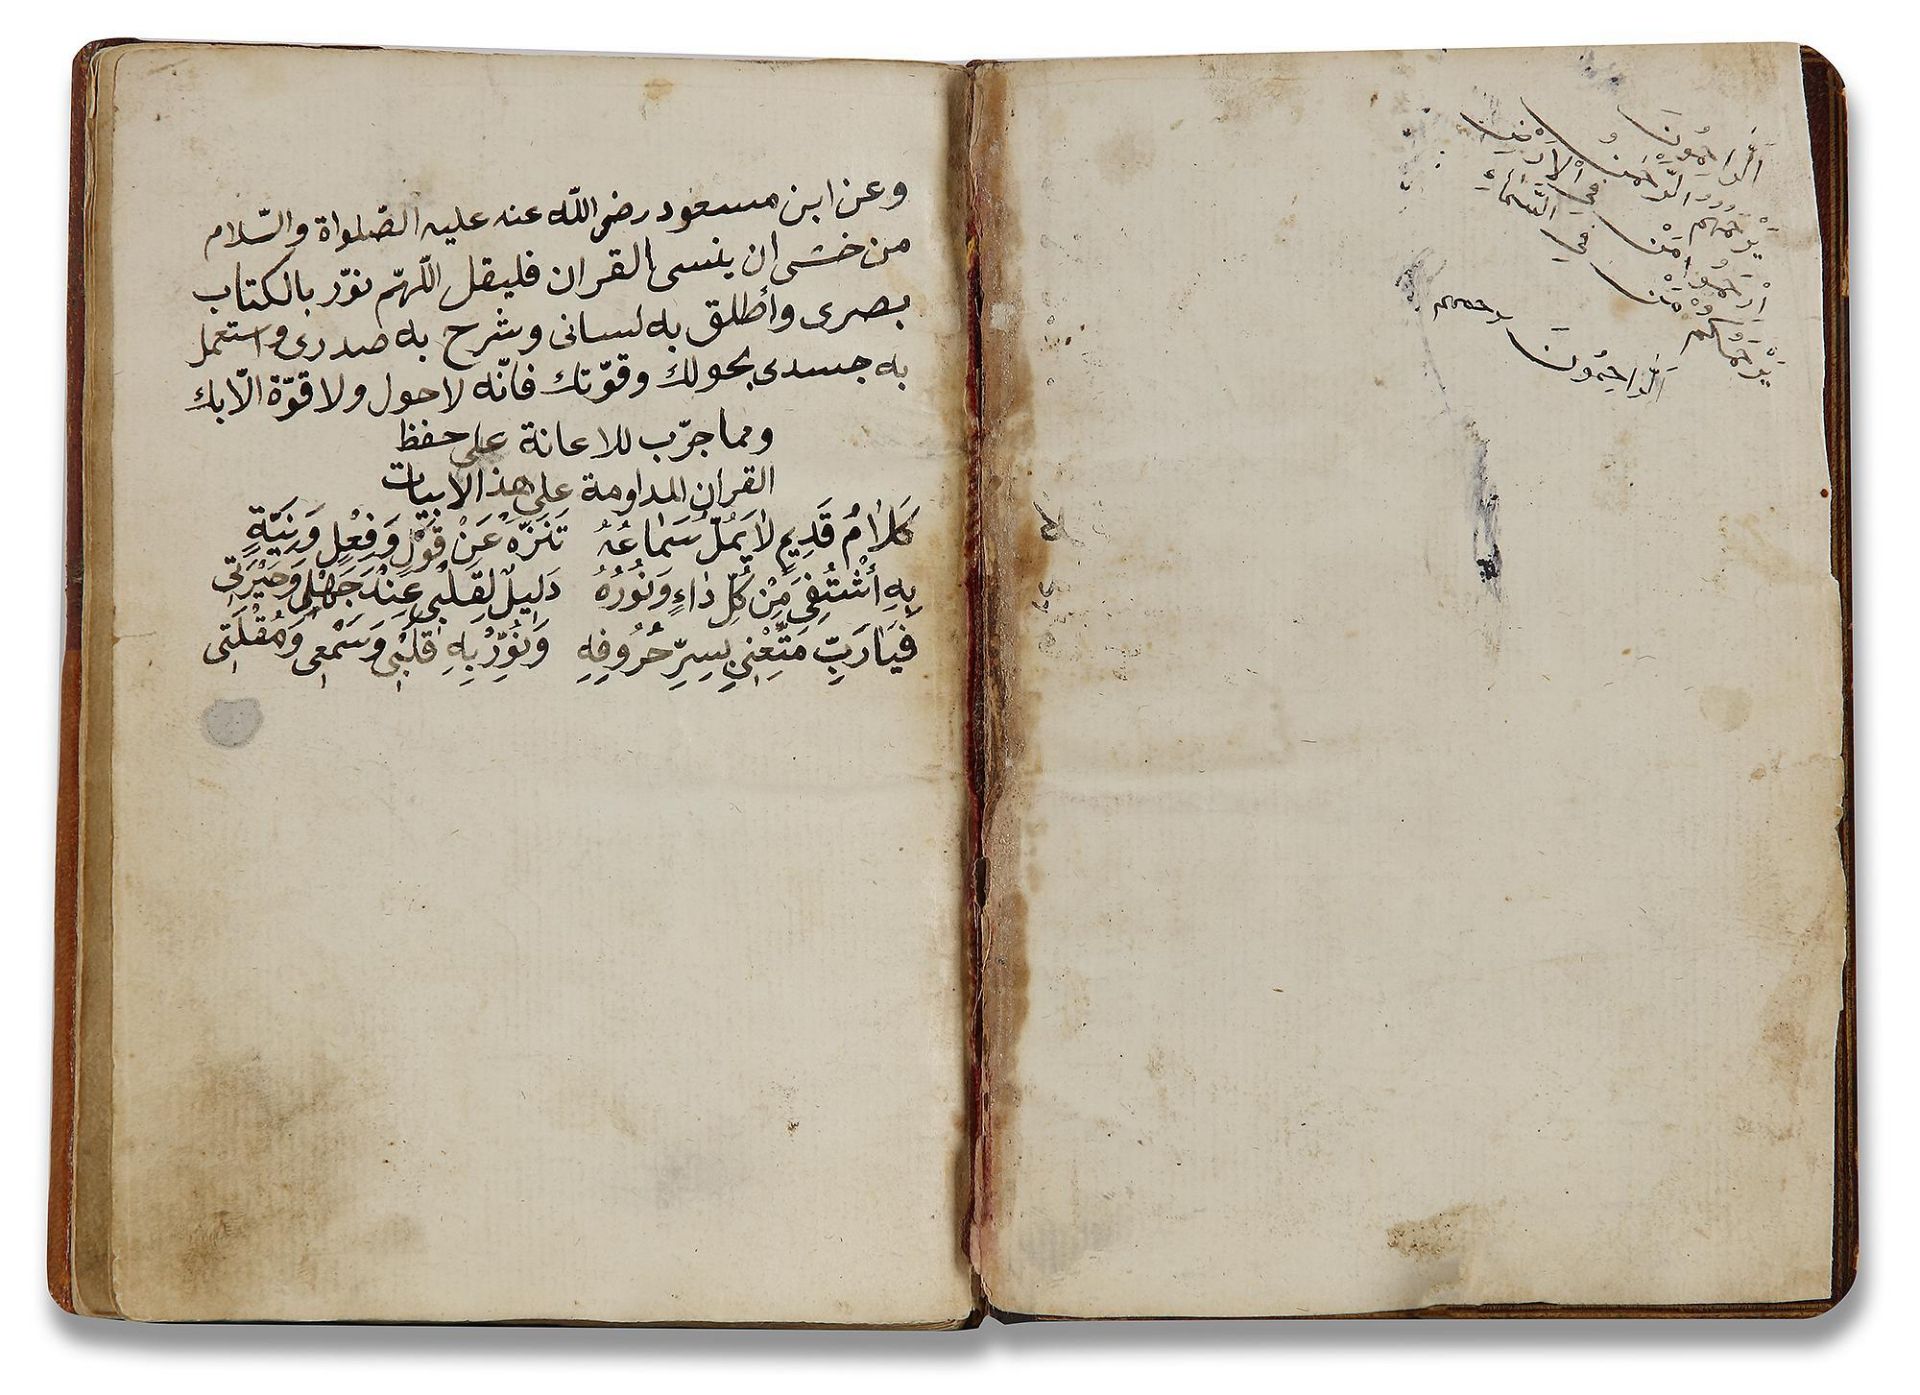 AN OTTOMAN MANUSCRIPT COPIED BY YUSUF IBN ABD AL-WAHHAB 1099 AH/1688 AD - Image 4 of 16